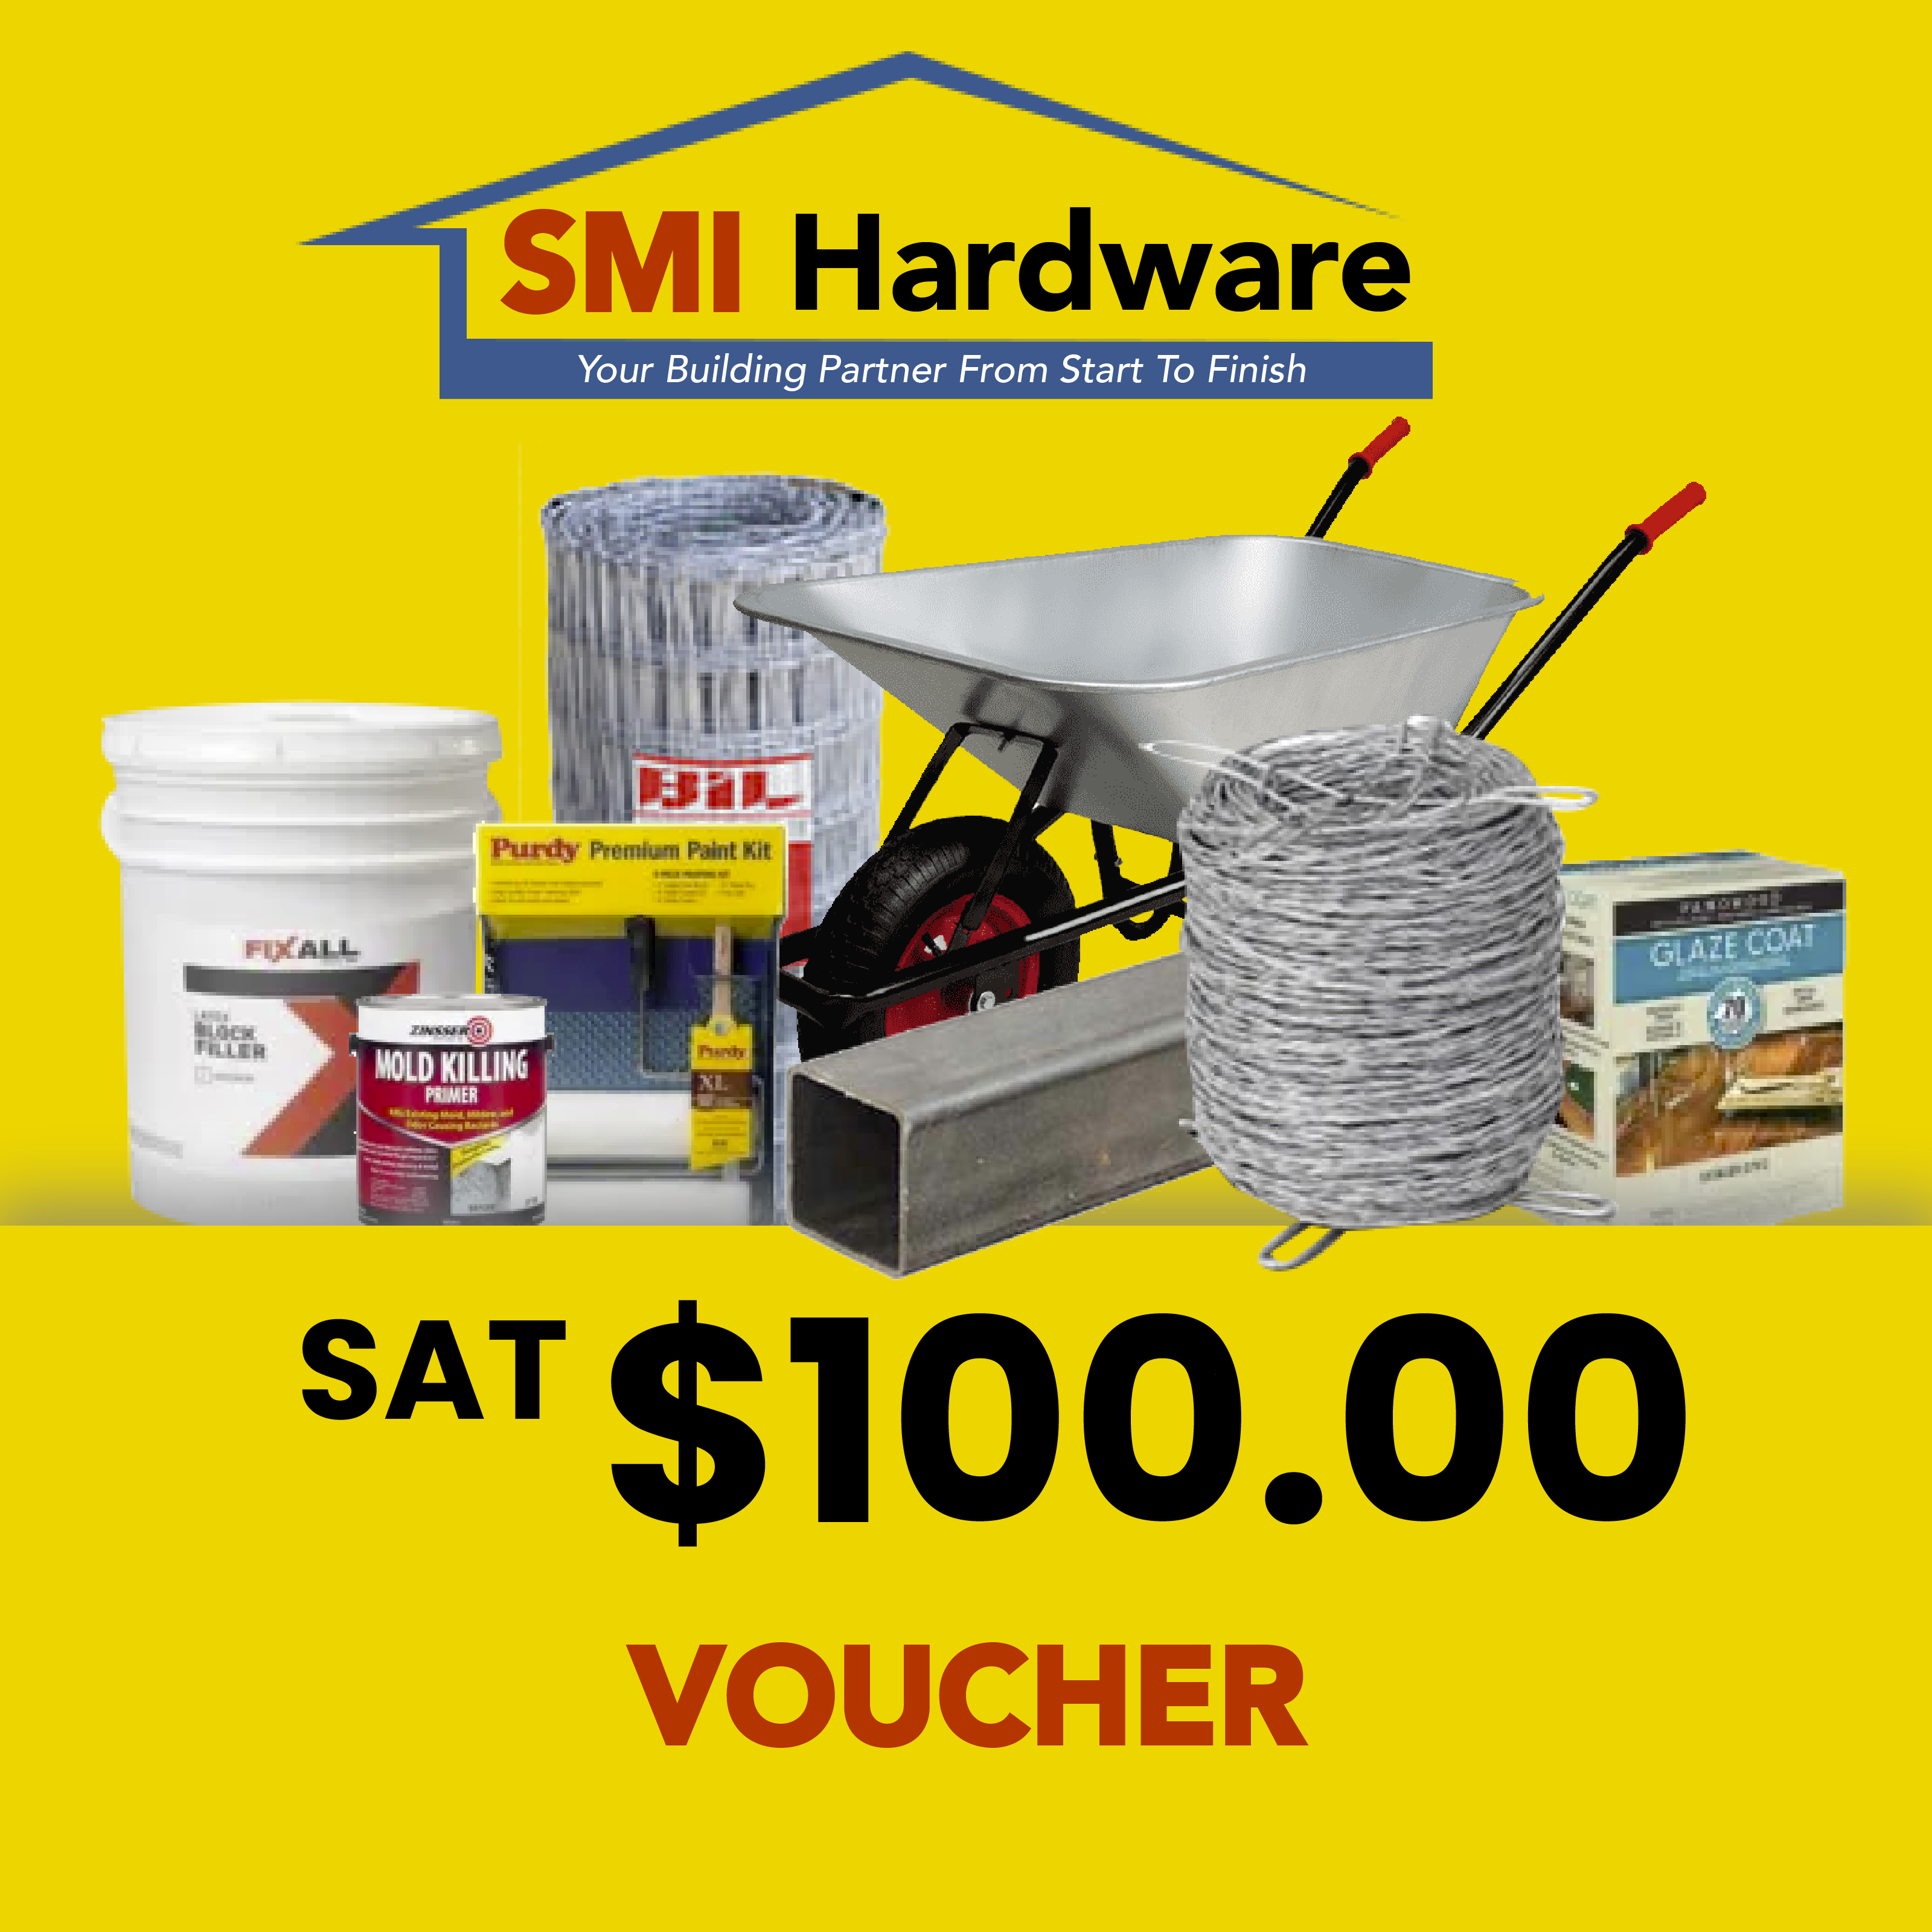 SMI Hardware Gift Voucher WS$100